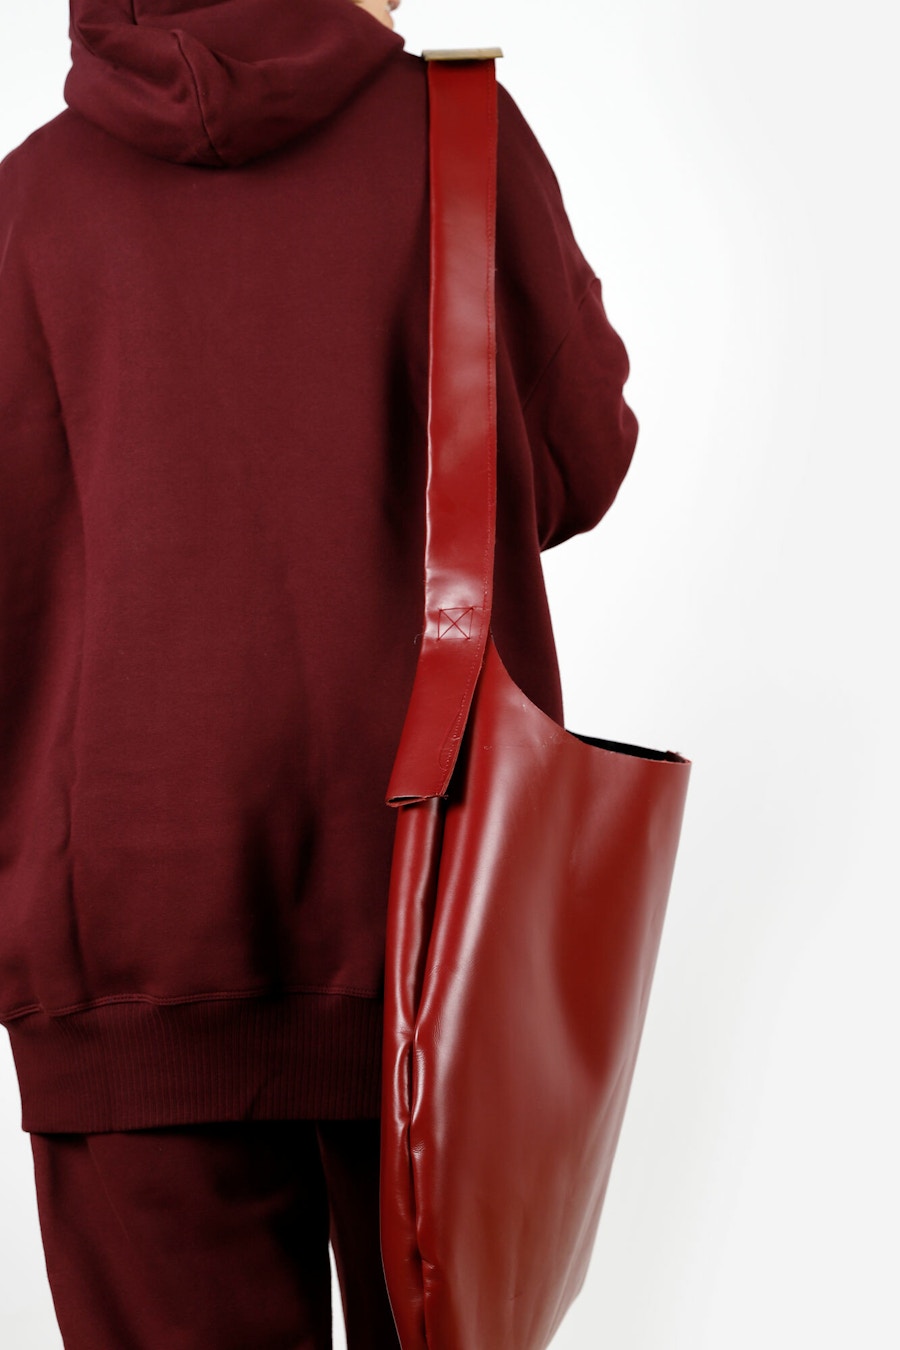 Big Red Handbag Back Shoulder